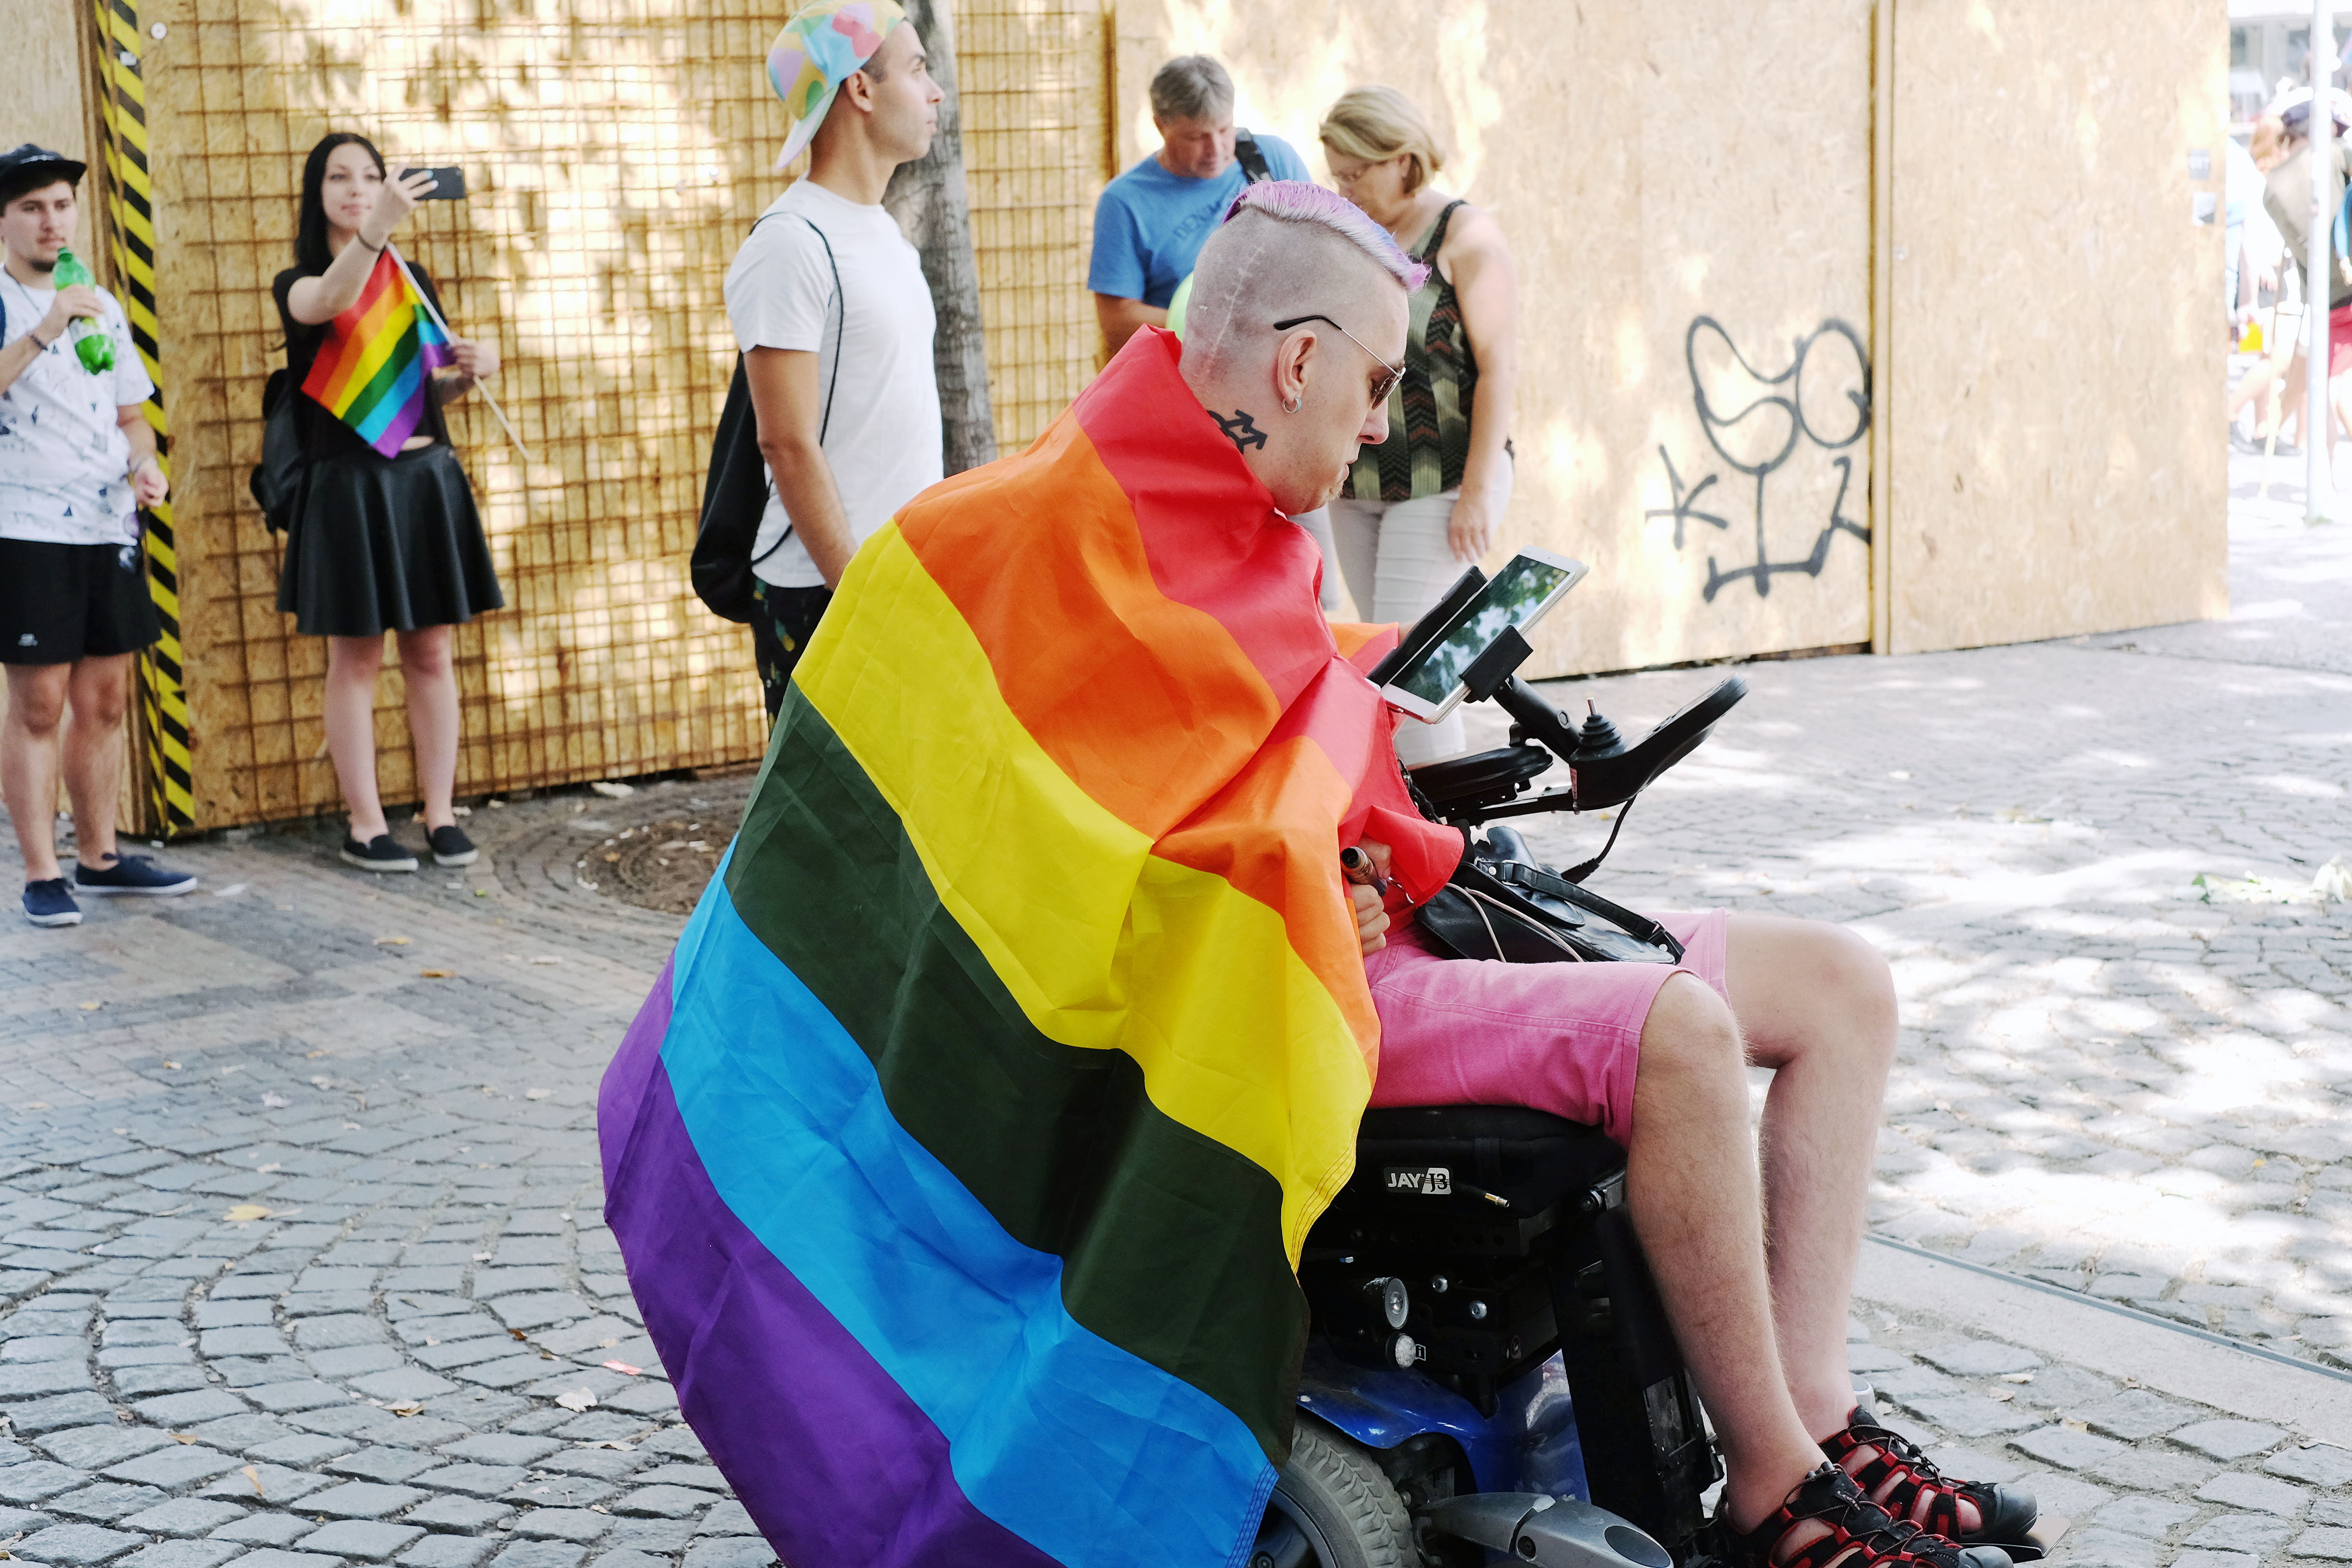  ЛГБТ-прайд в Праге, 5 августа 2018 года